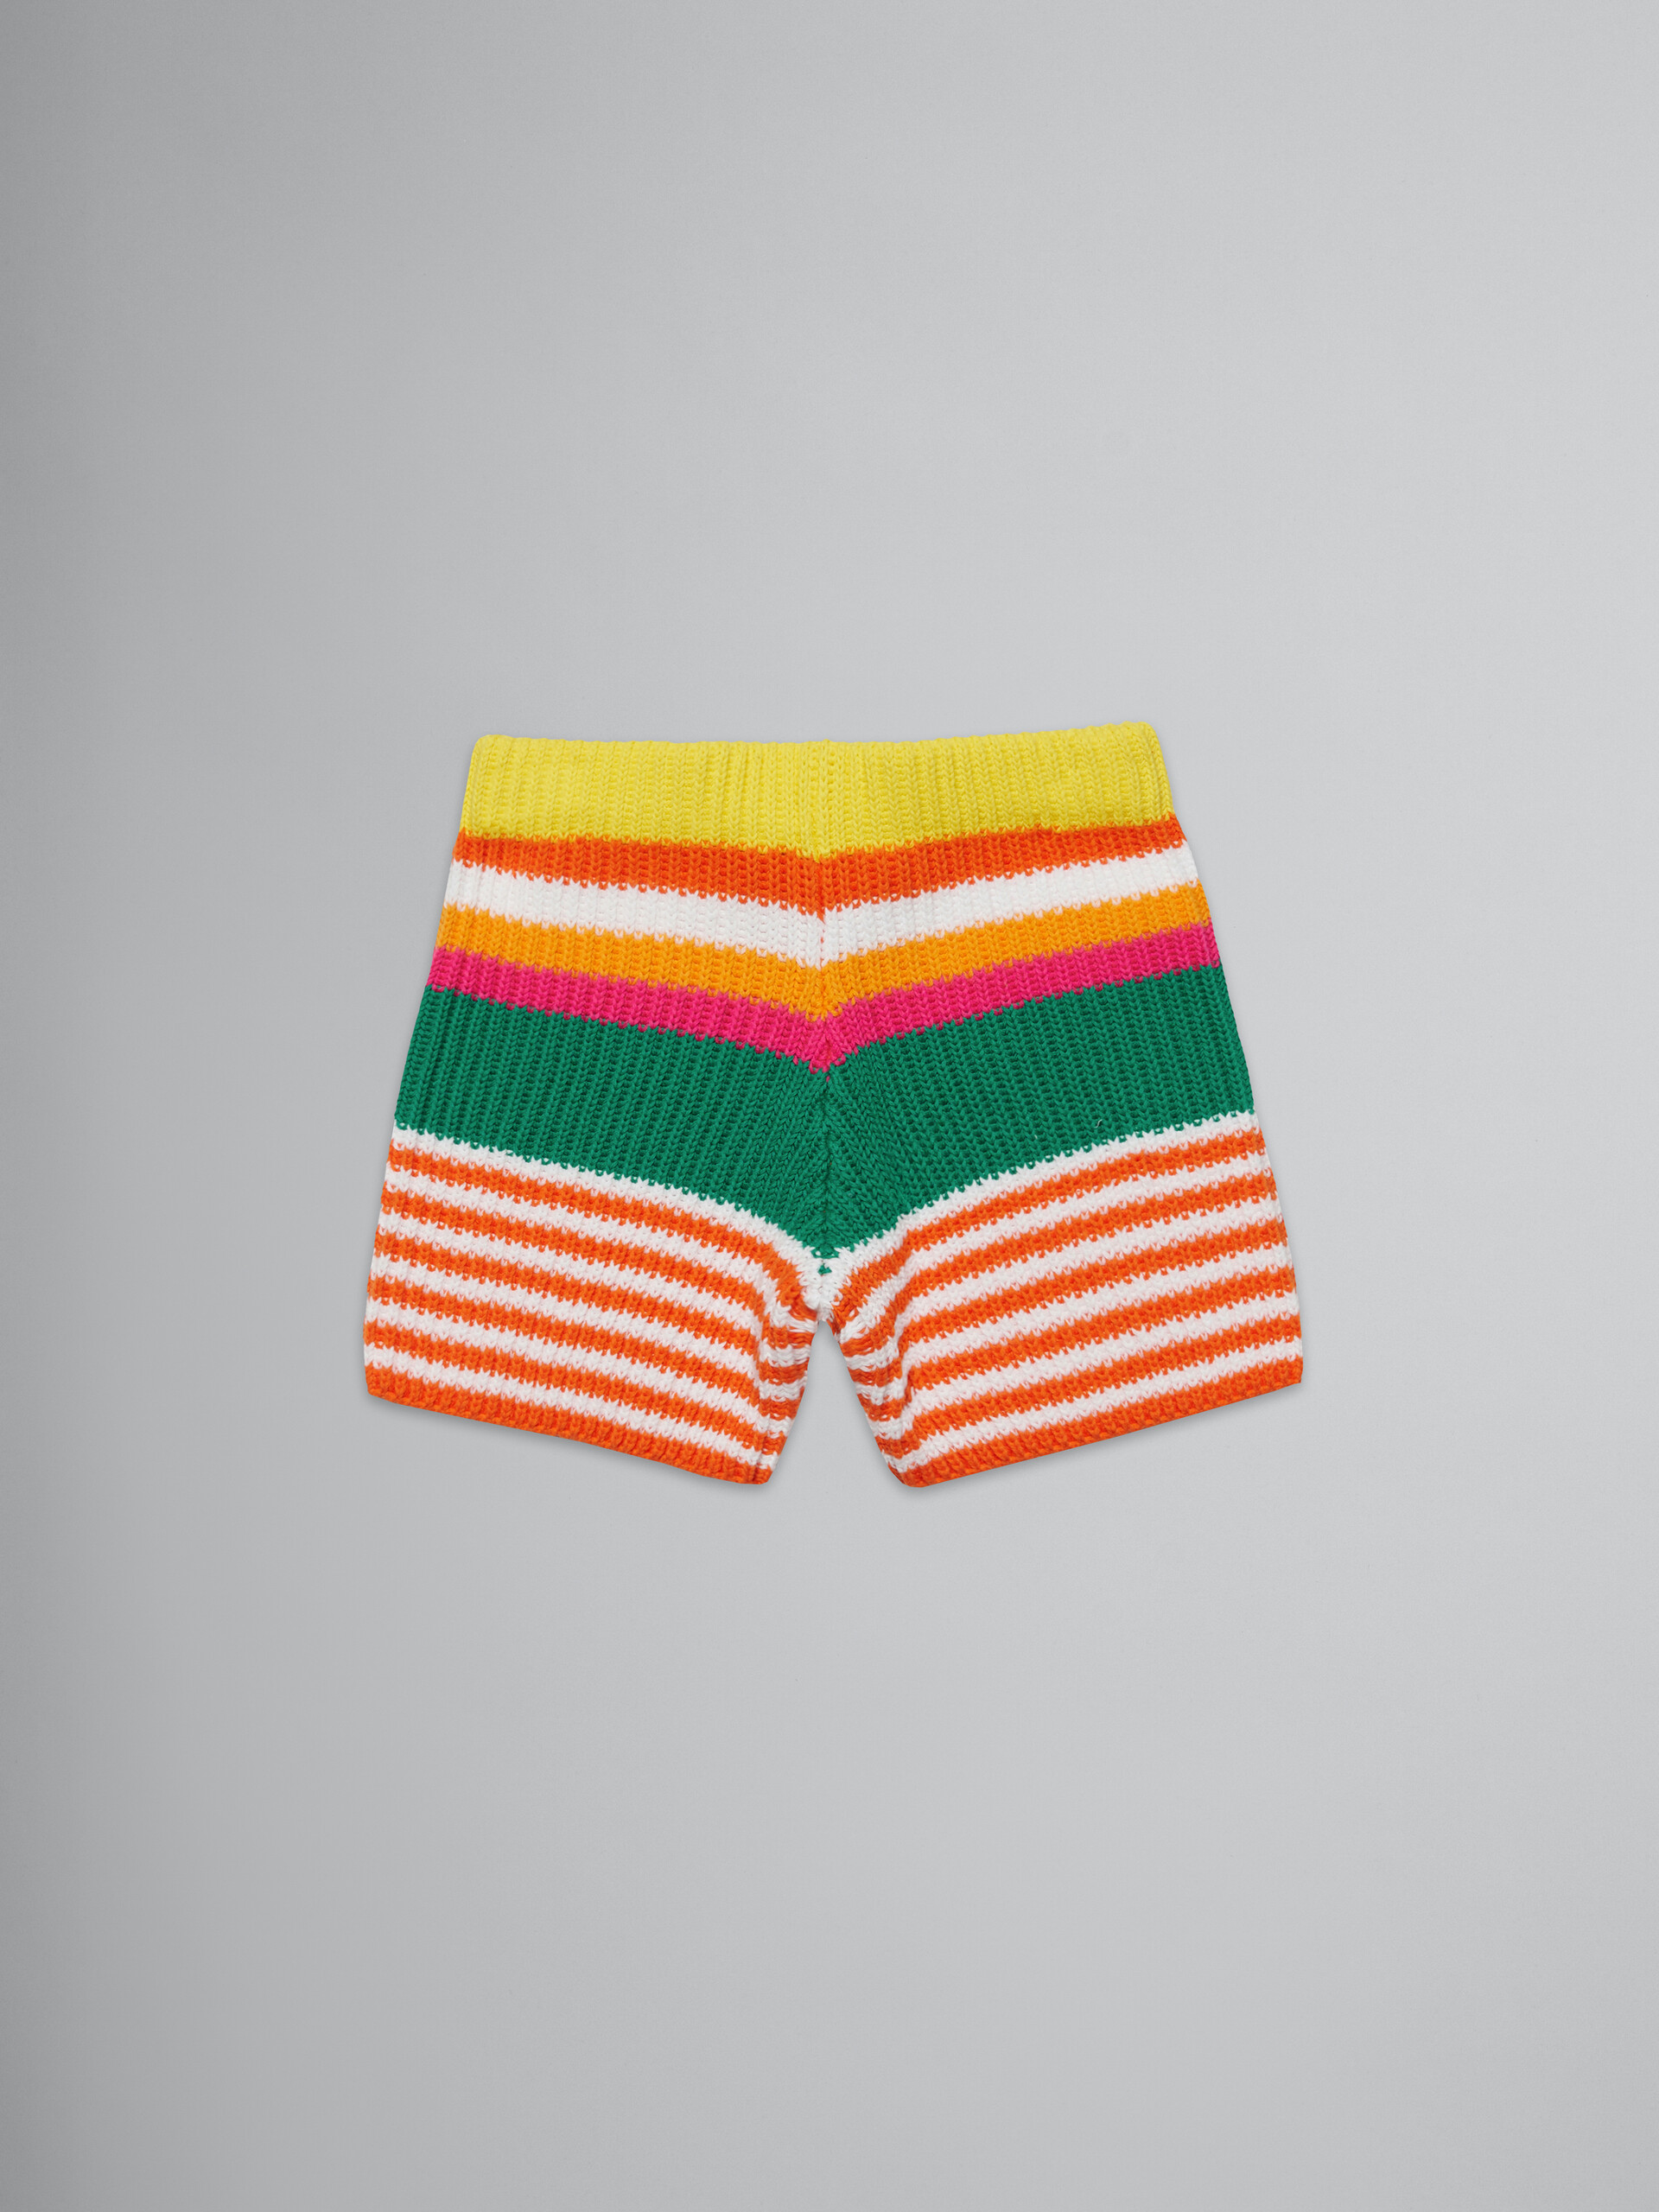 Shorts in maglia a righe multicolor - Pantaloni - Image 2